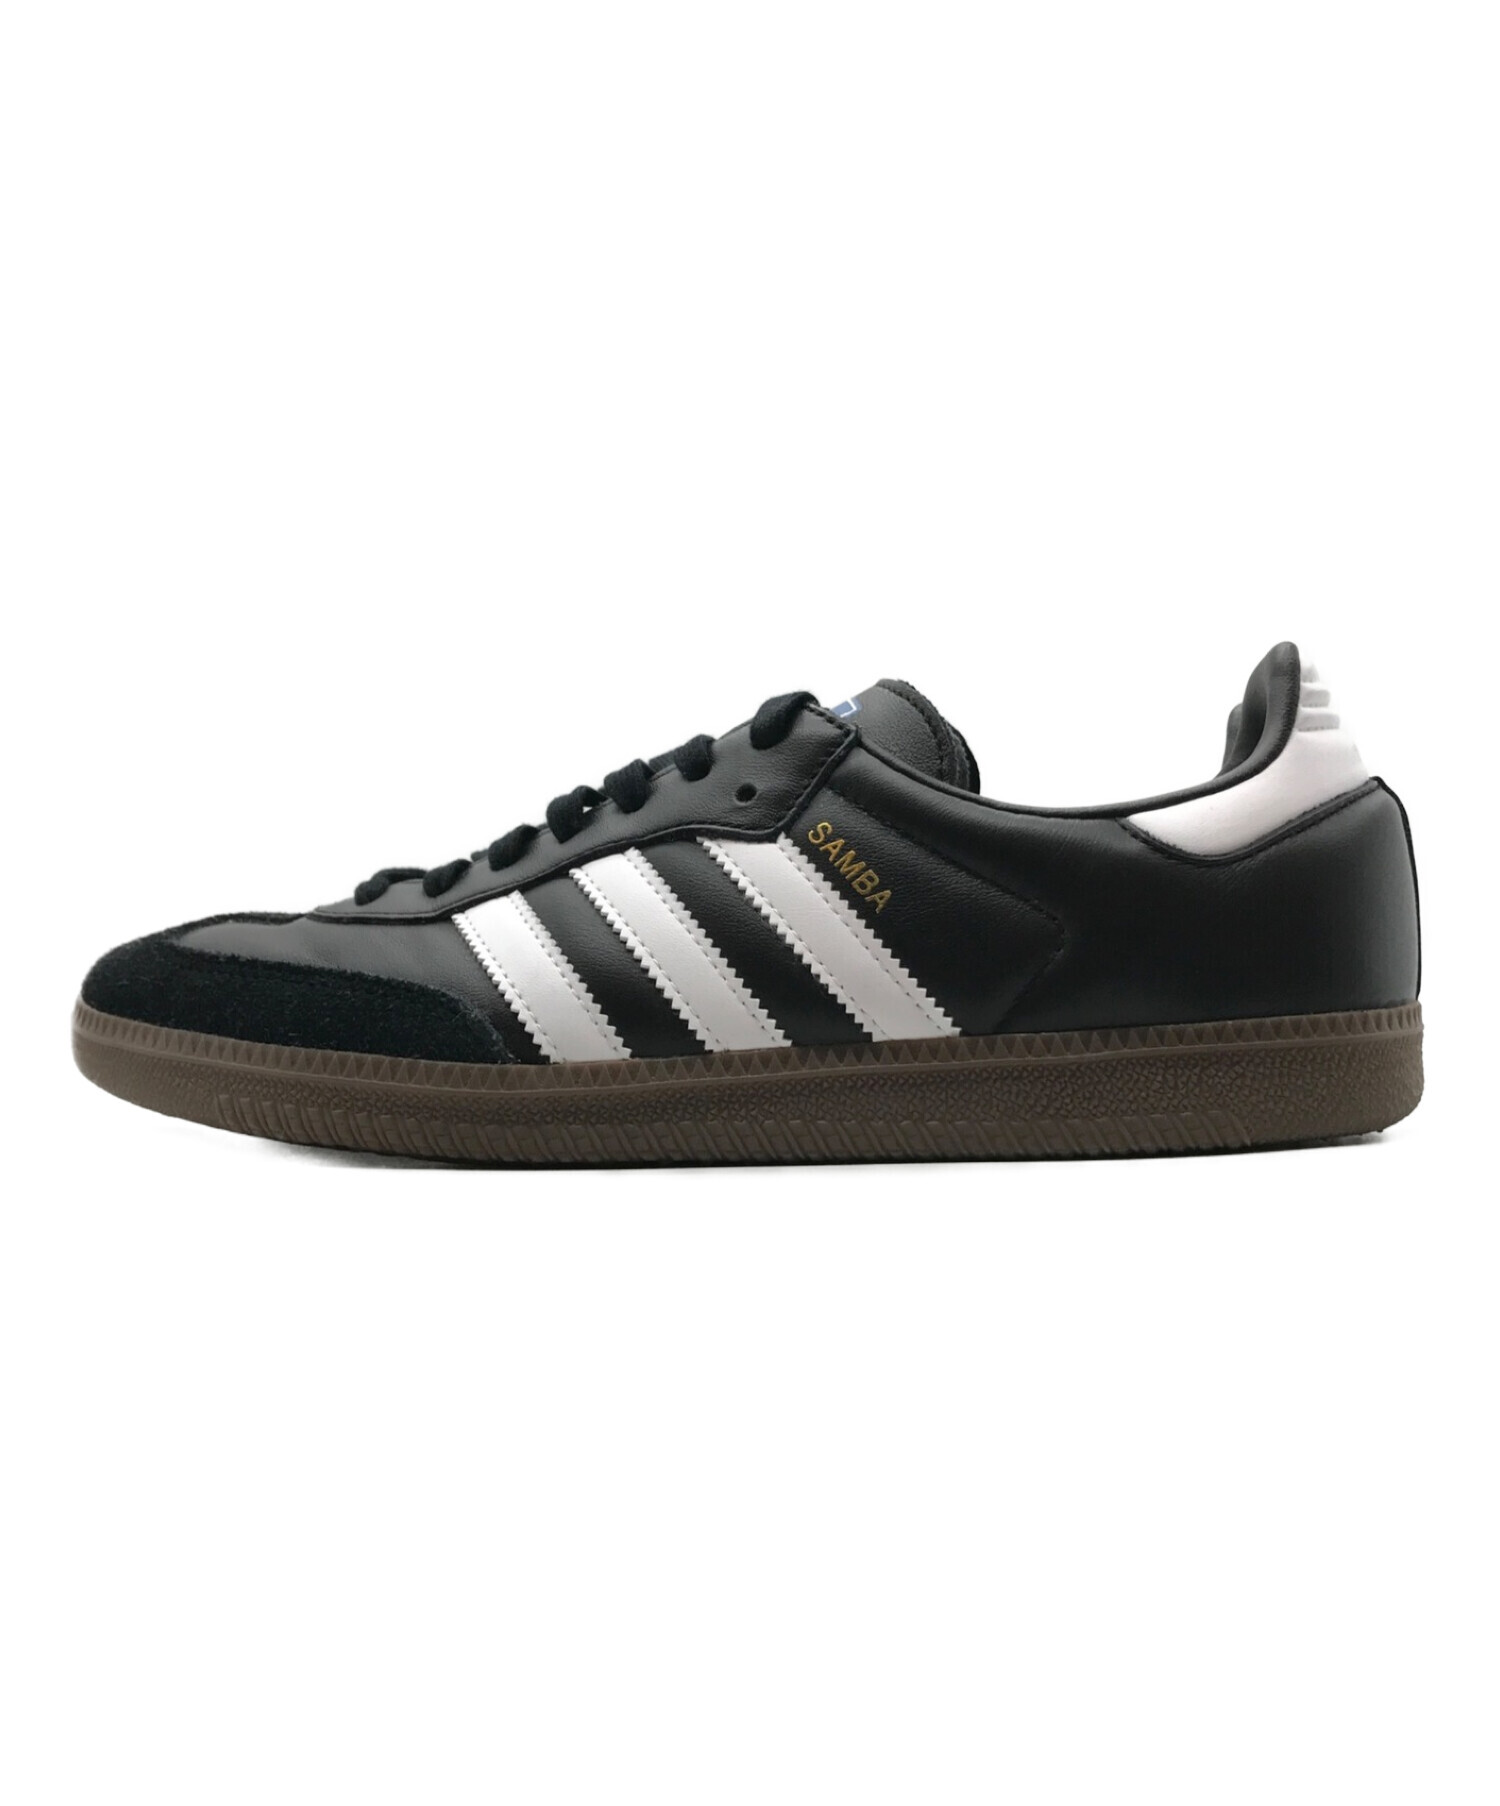 Adidas samba og black 28.0靴